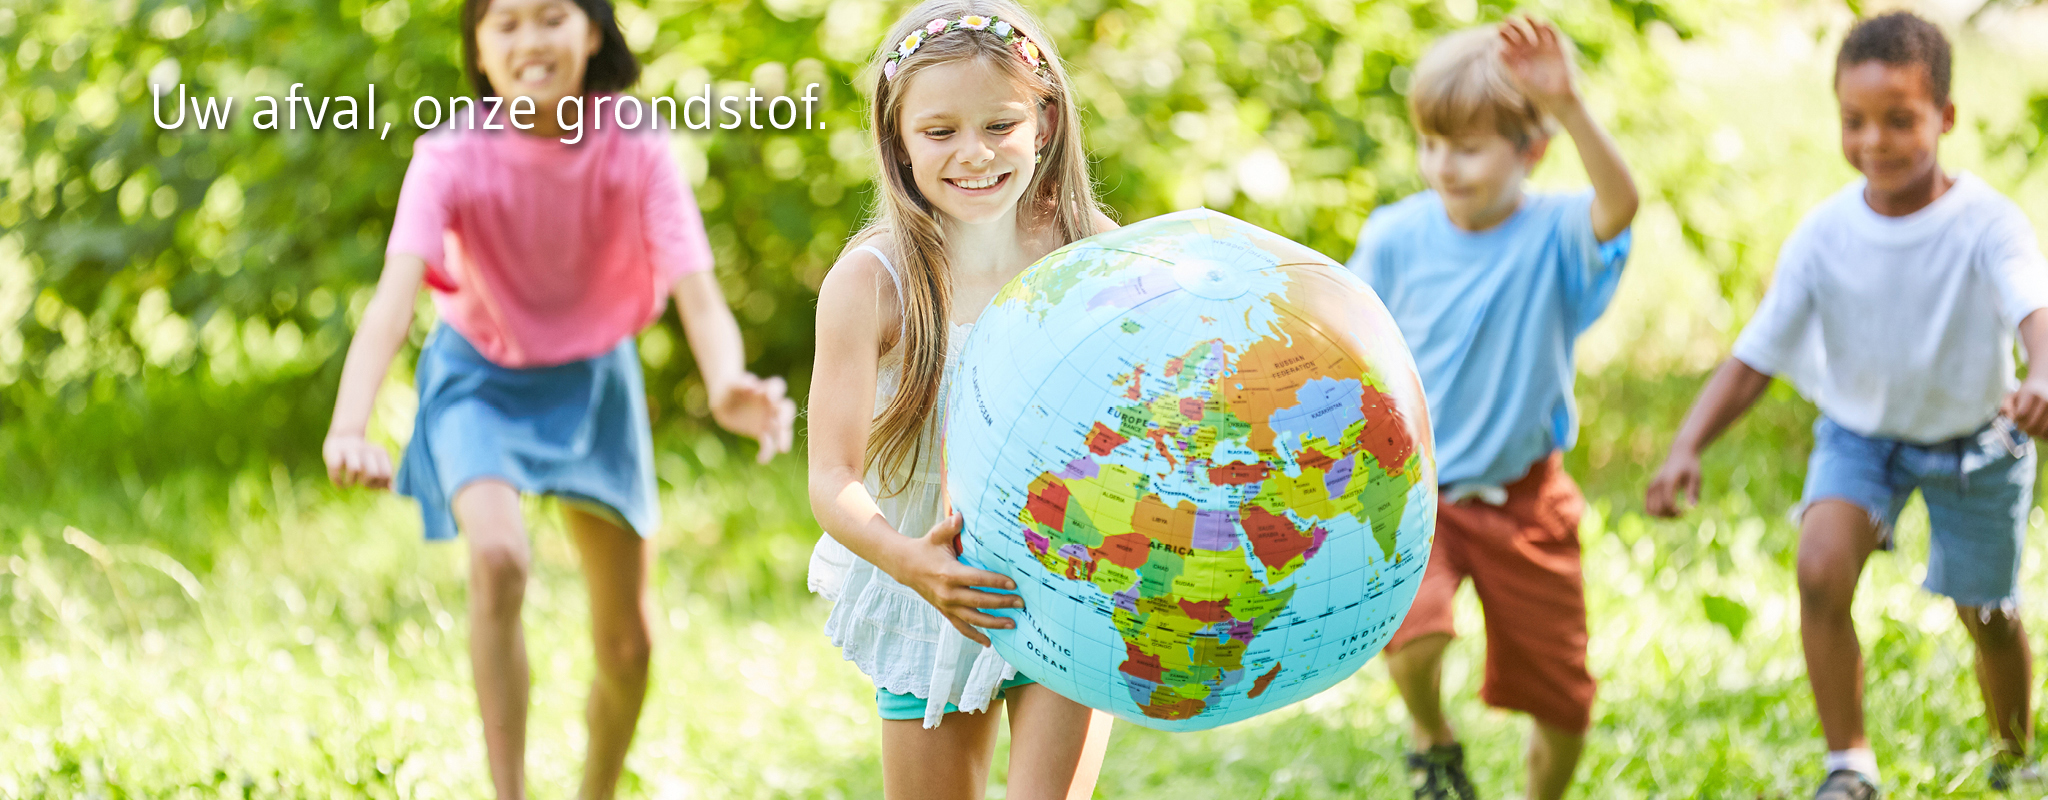 lachende kinderen met wereldbol zien een groene toekomst